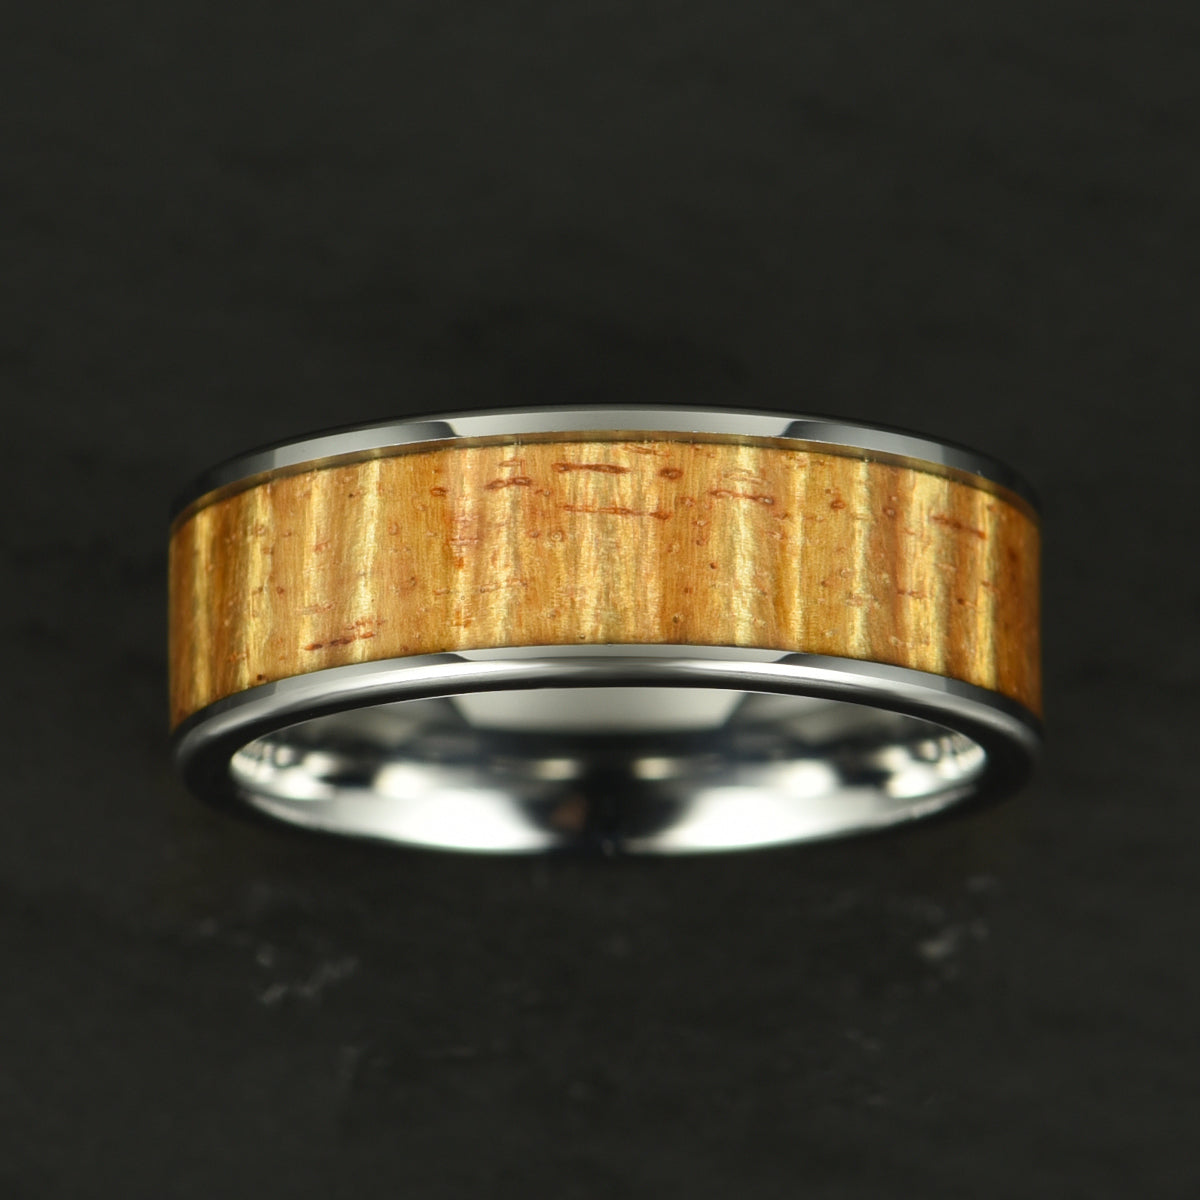 Hawaiian Koa Wood Tungsten Mens Wedding Ring 8MM